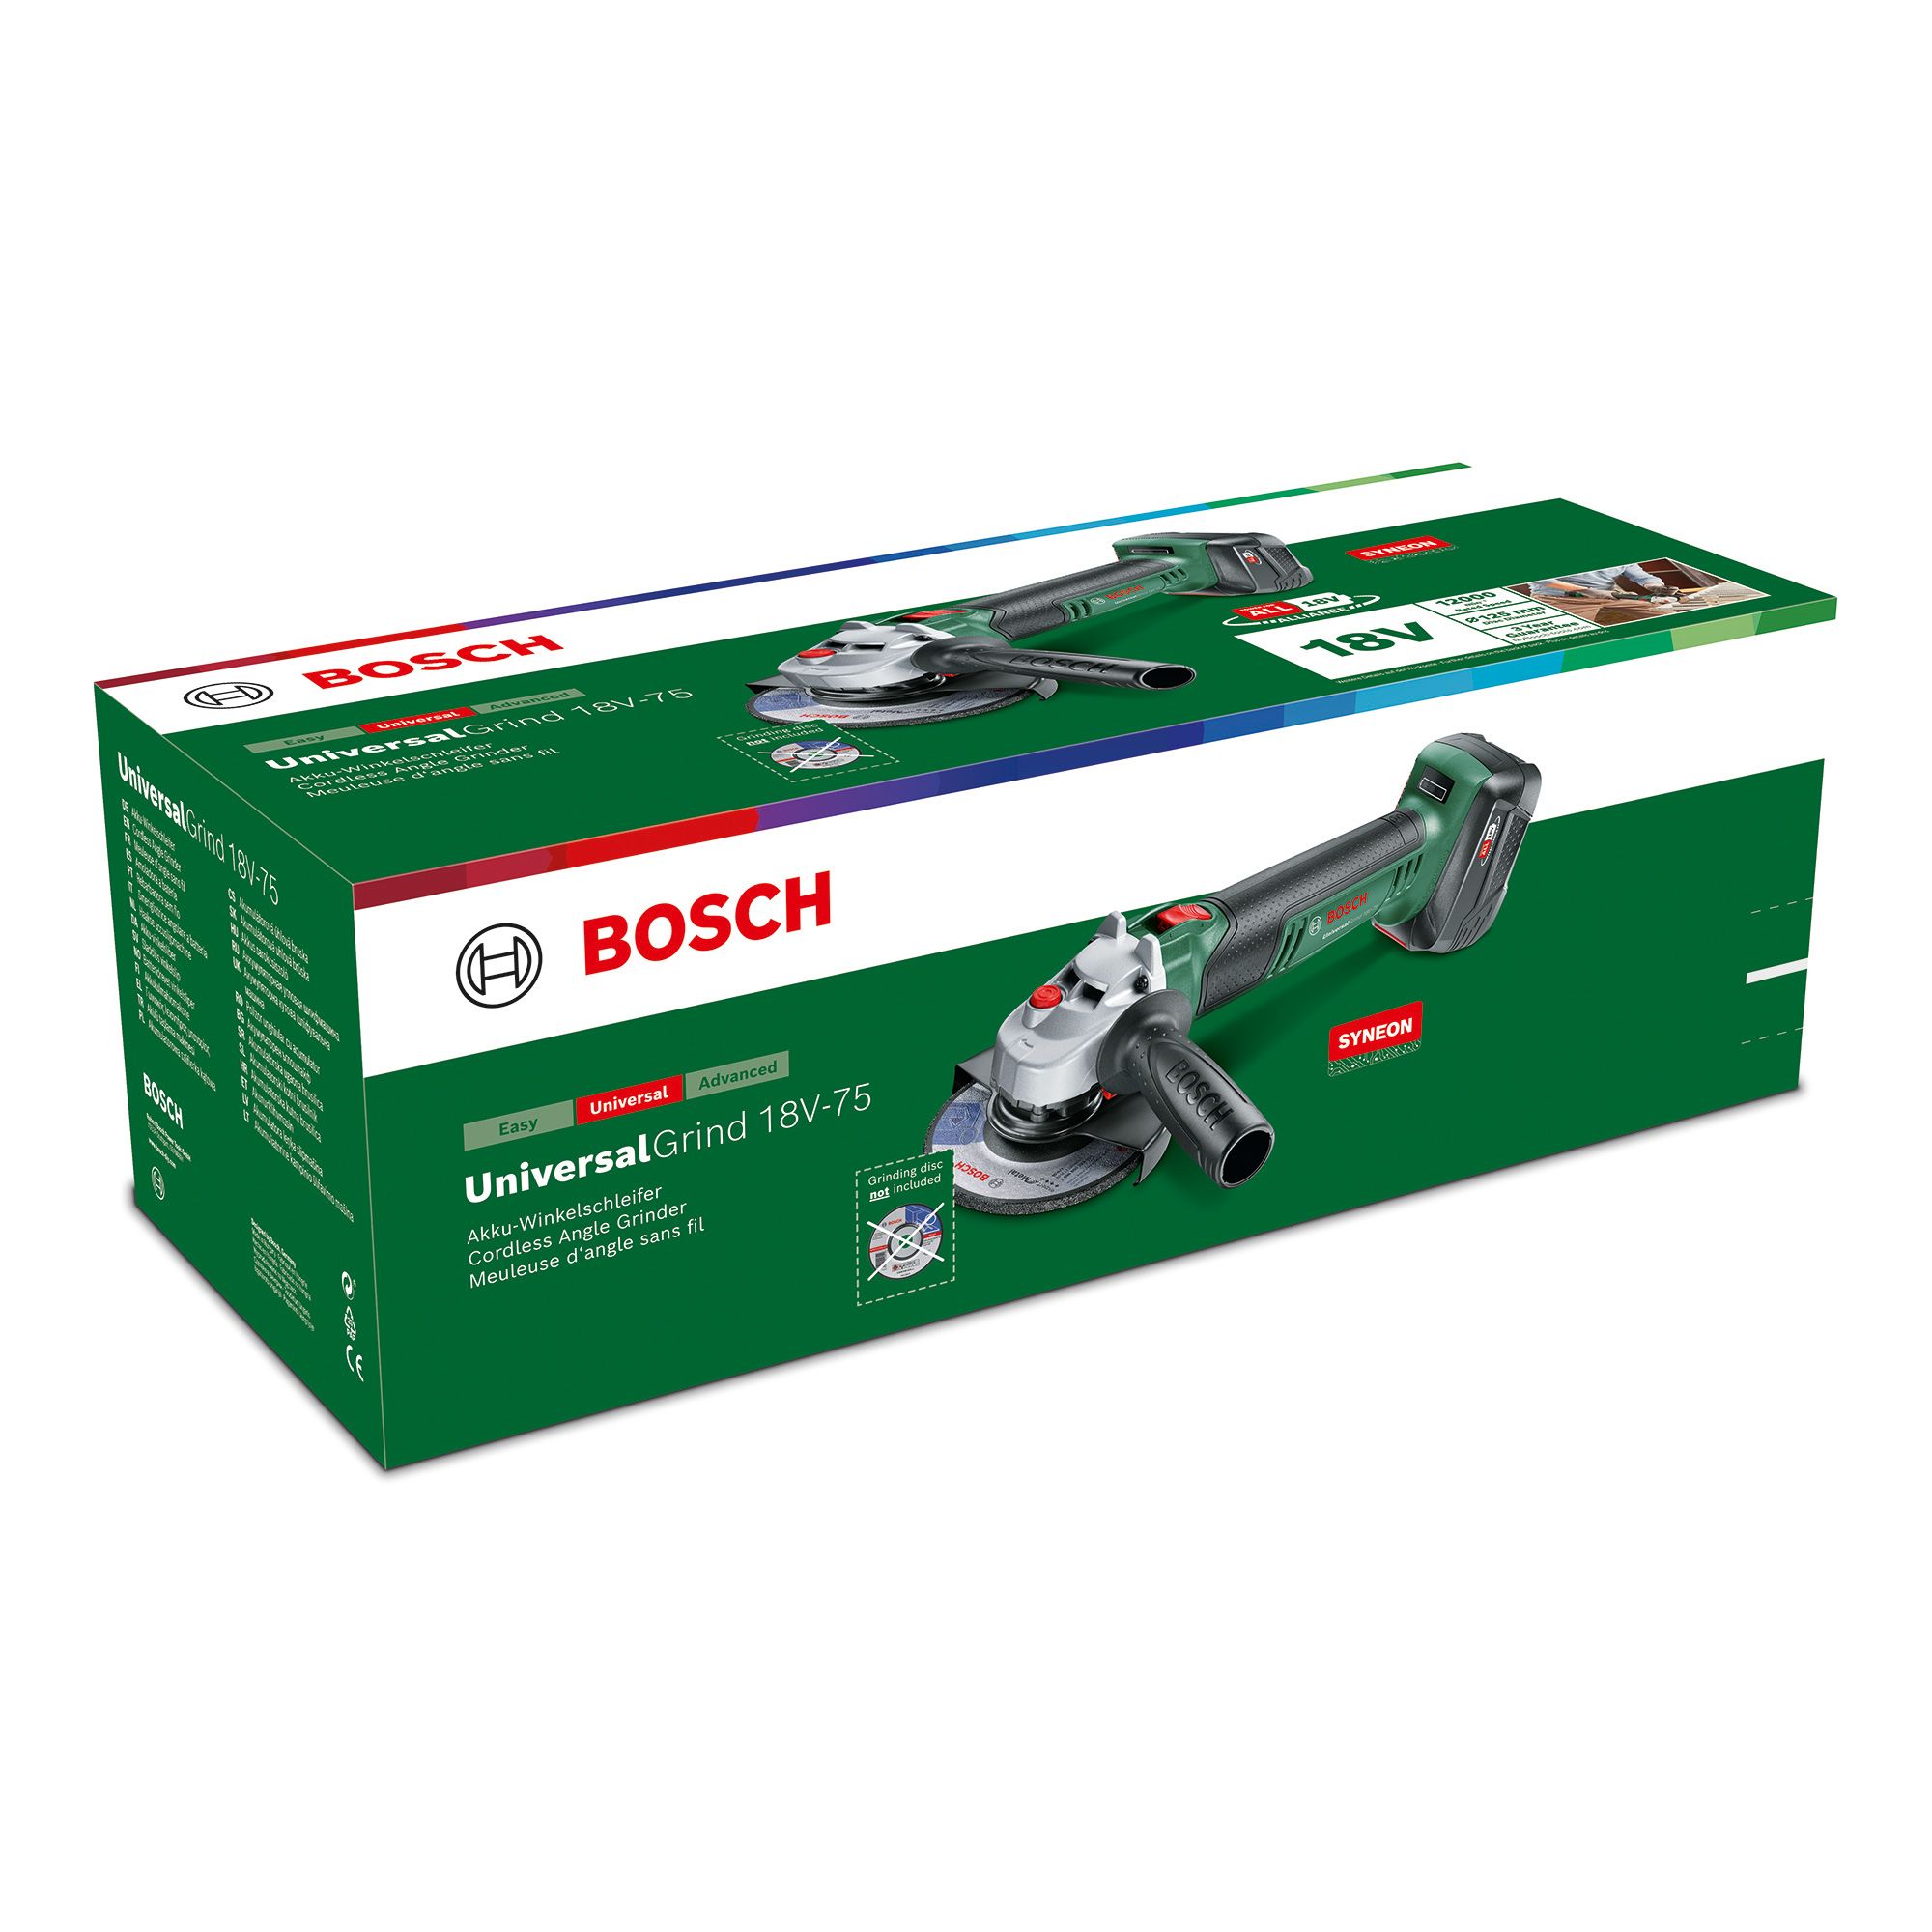 Bosch 18V 1 x 4 Li-ion One+ 115mm Cordless Angle grinder UniversalGrind 18V-75